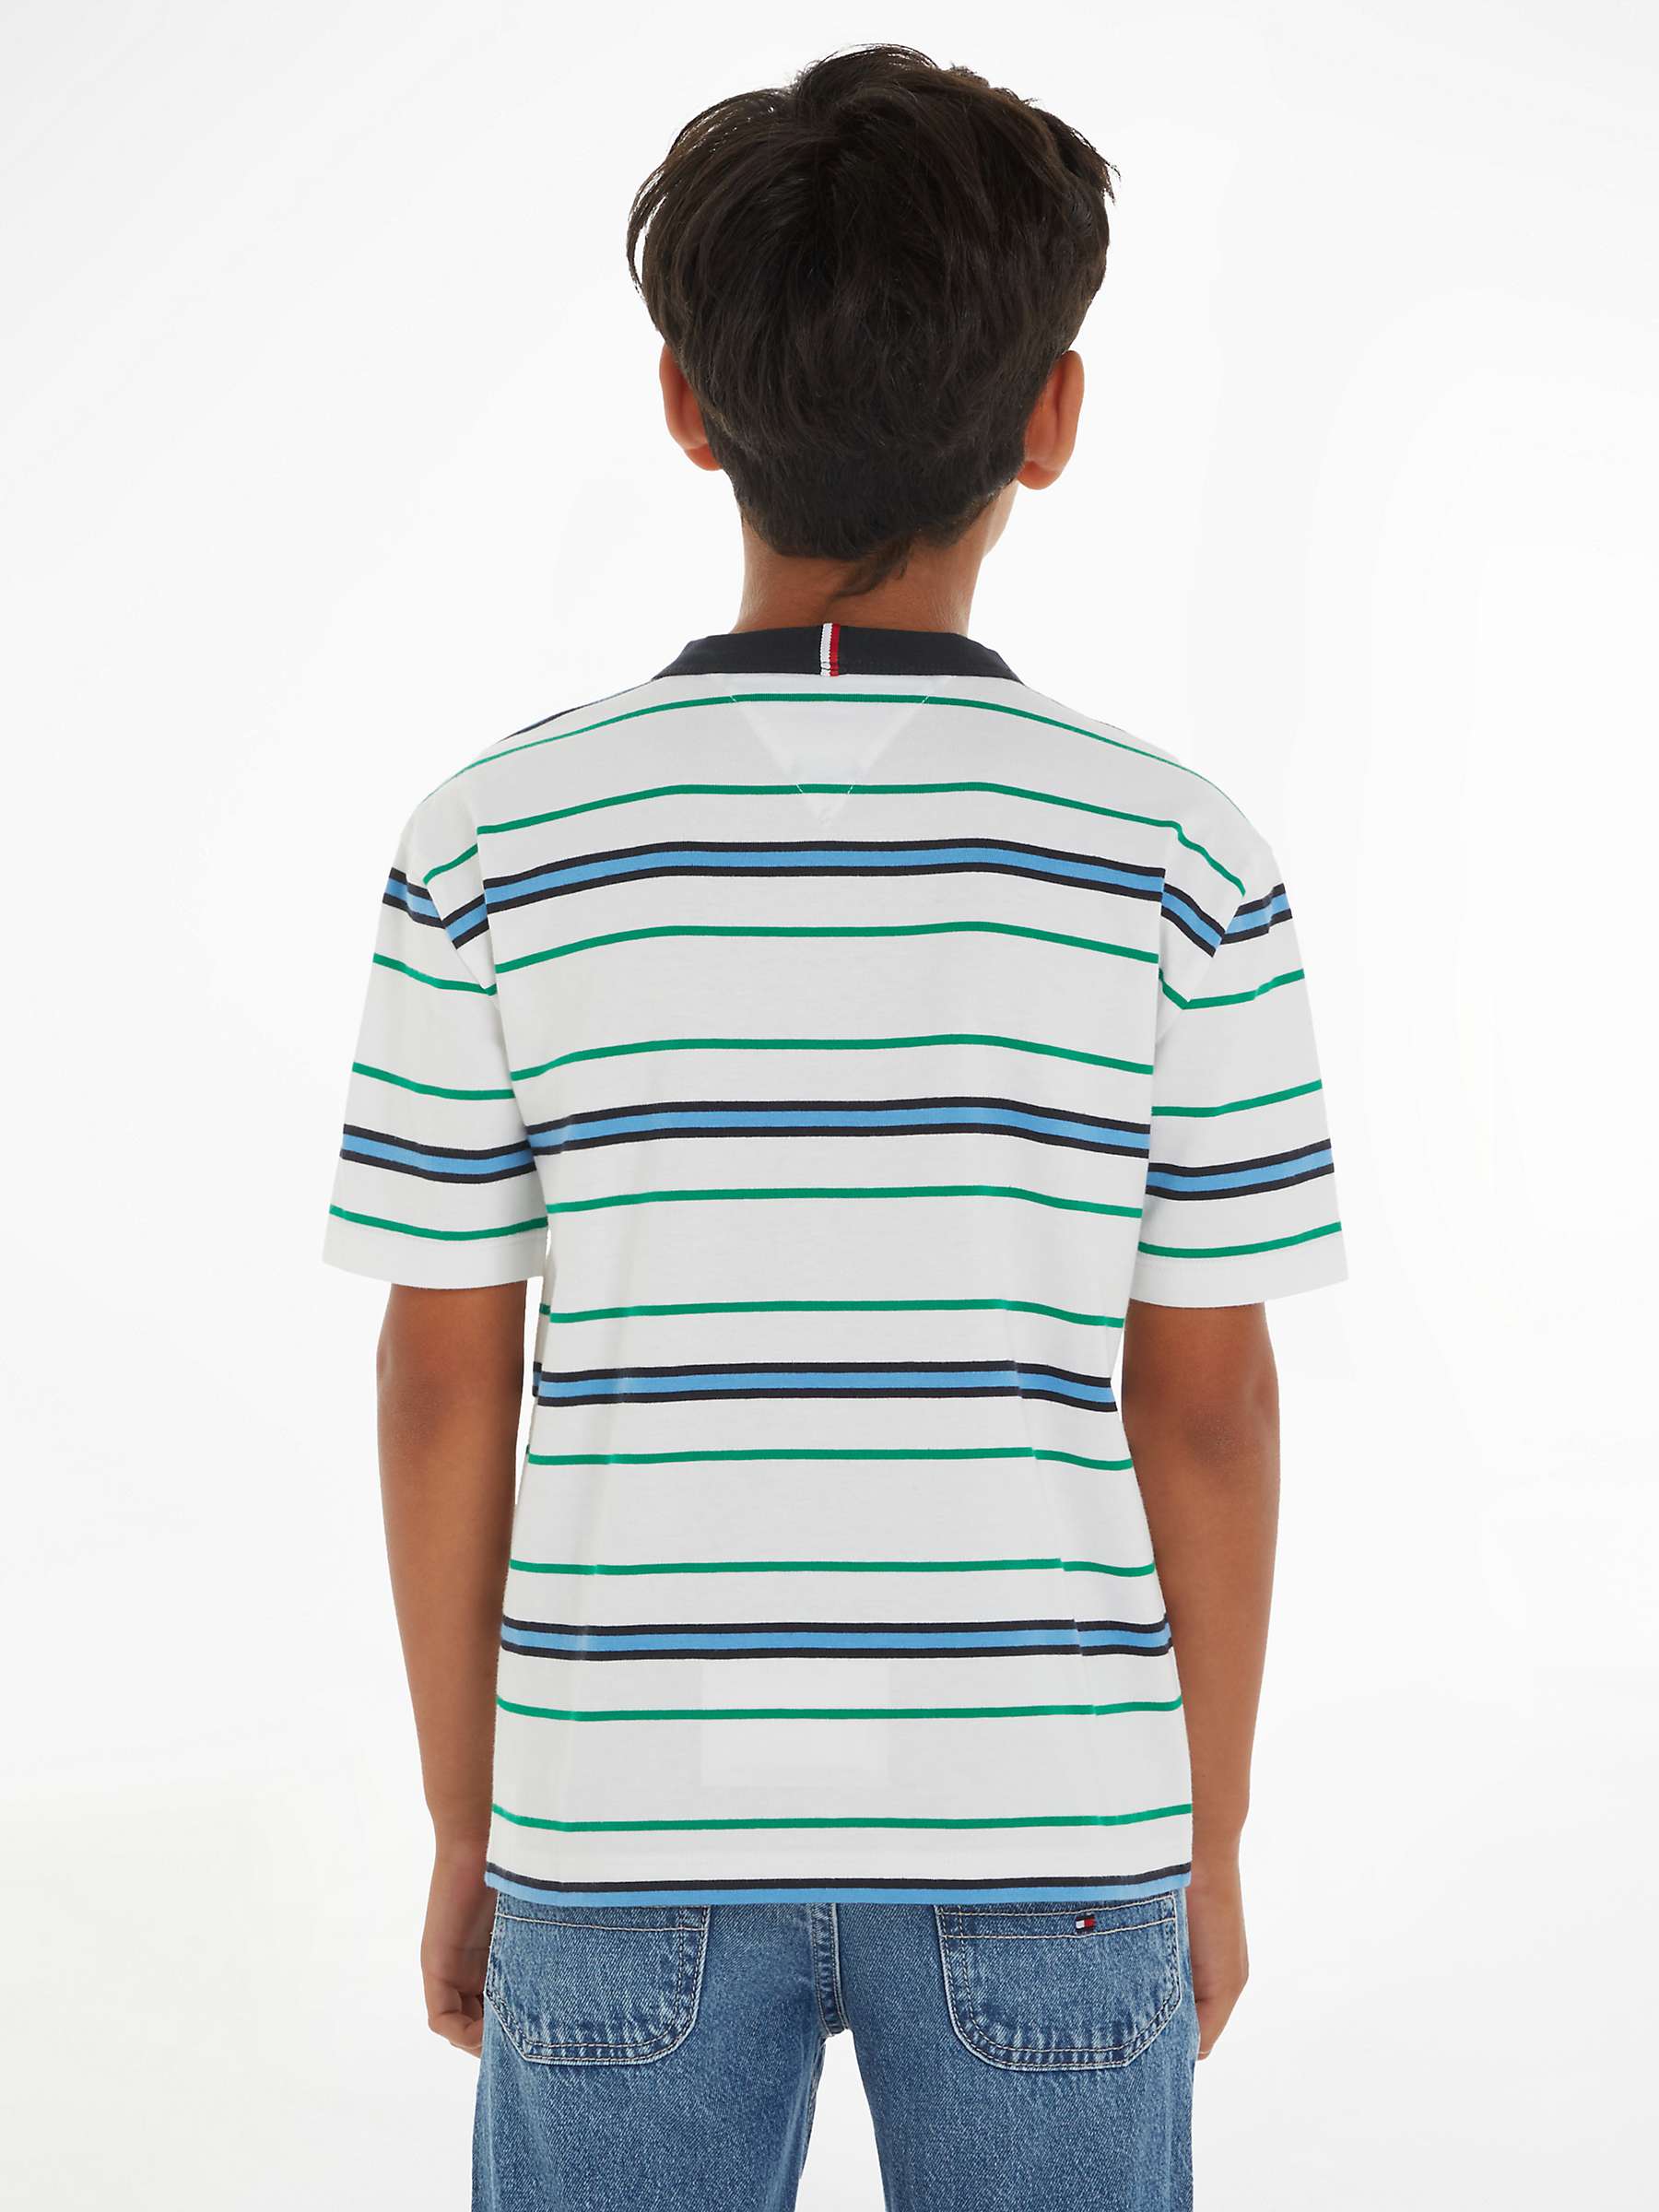 Buy Tommy Hilfiger Kids' Short Sleeve T-Shirt, White Base Online at johnlewis.com